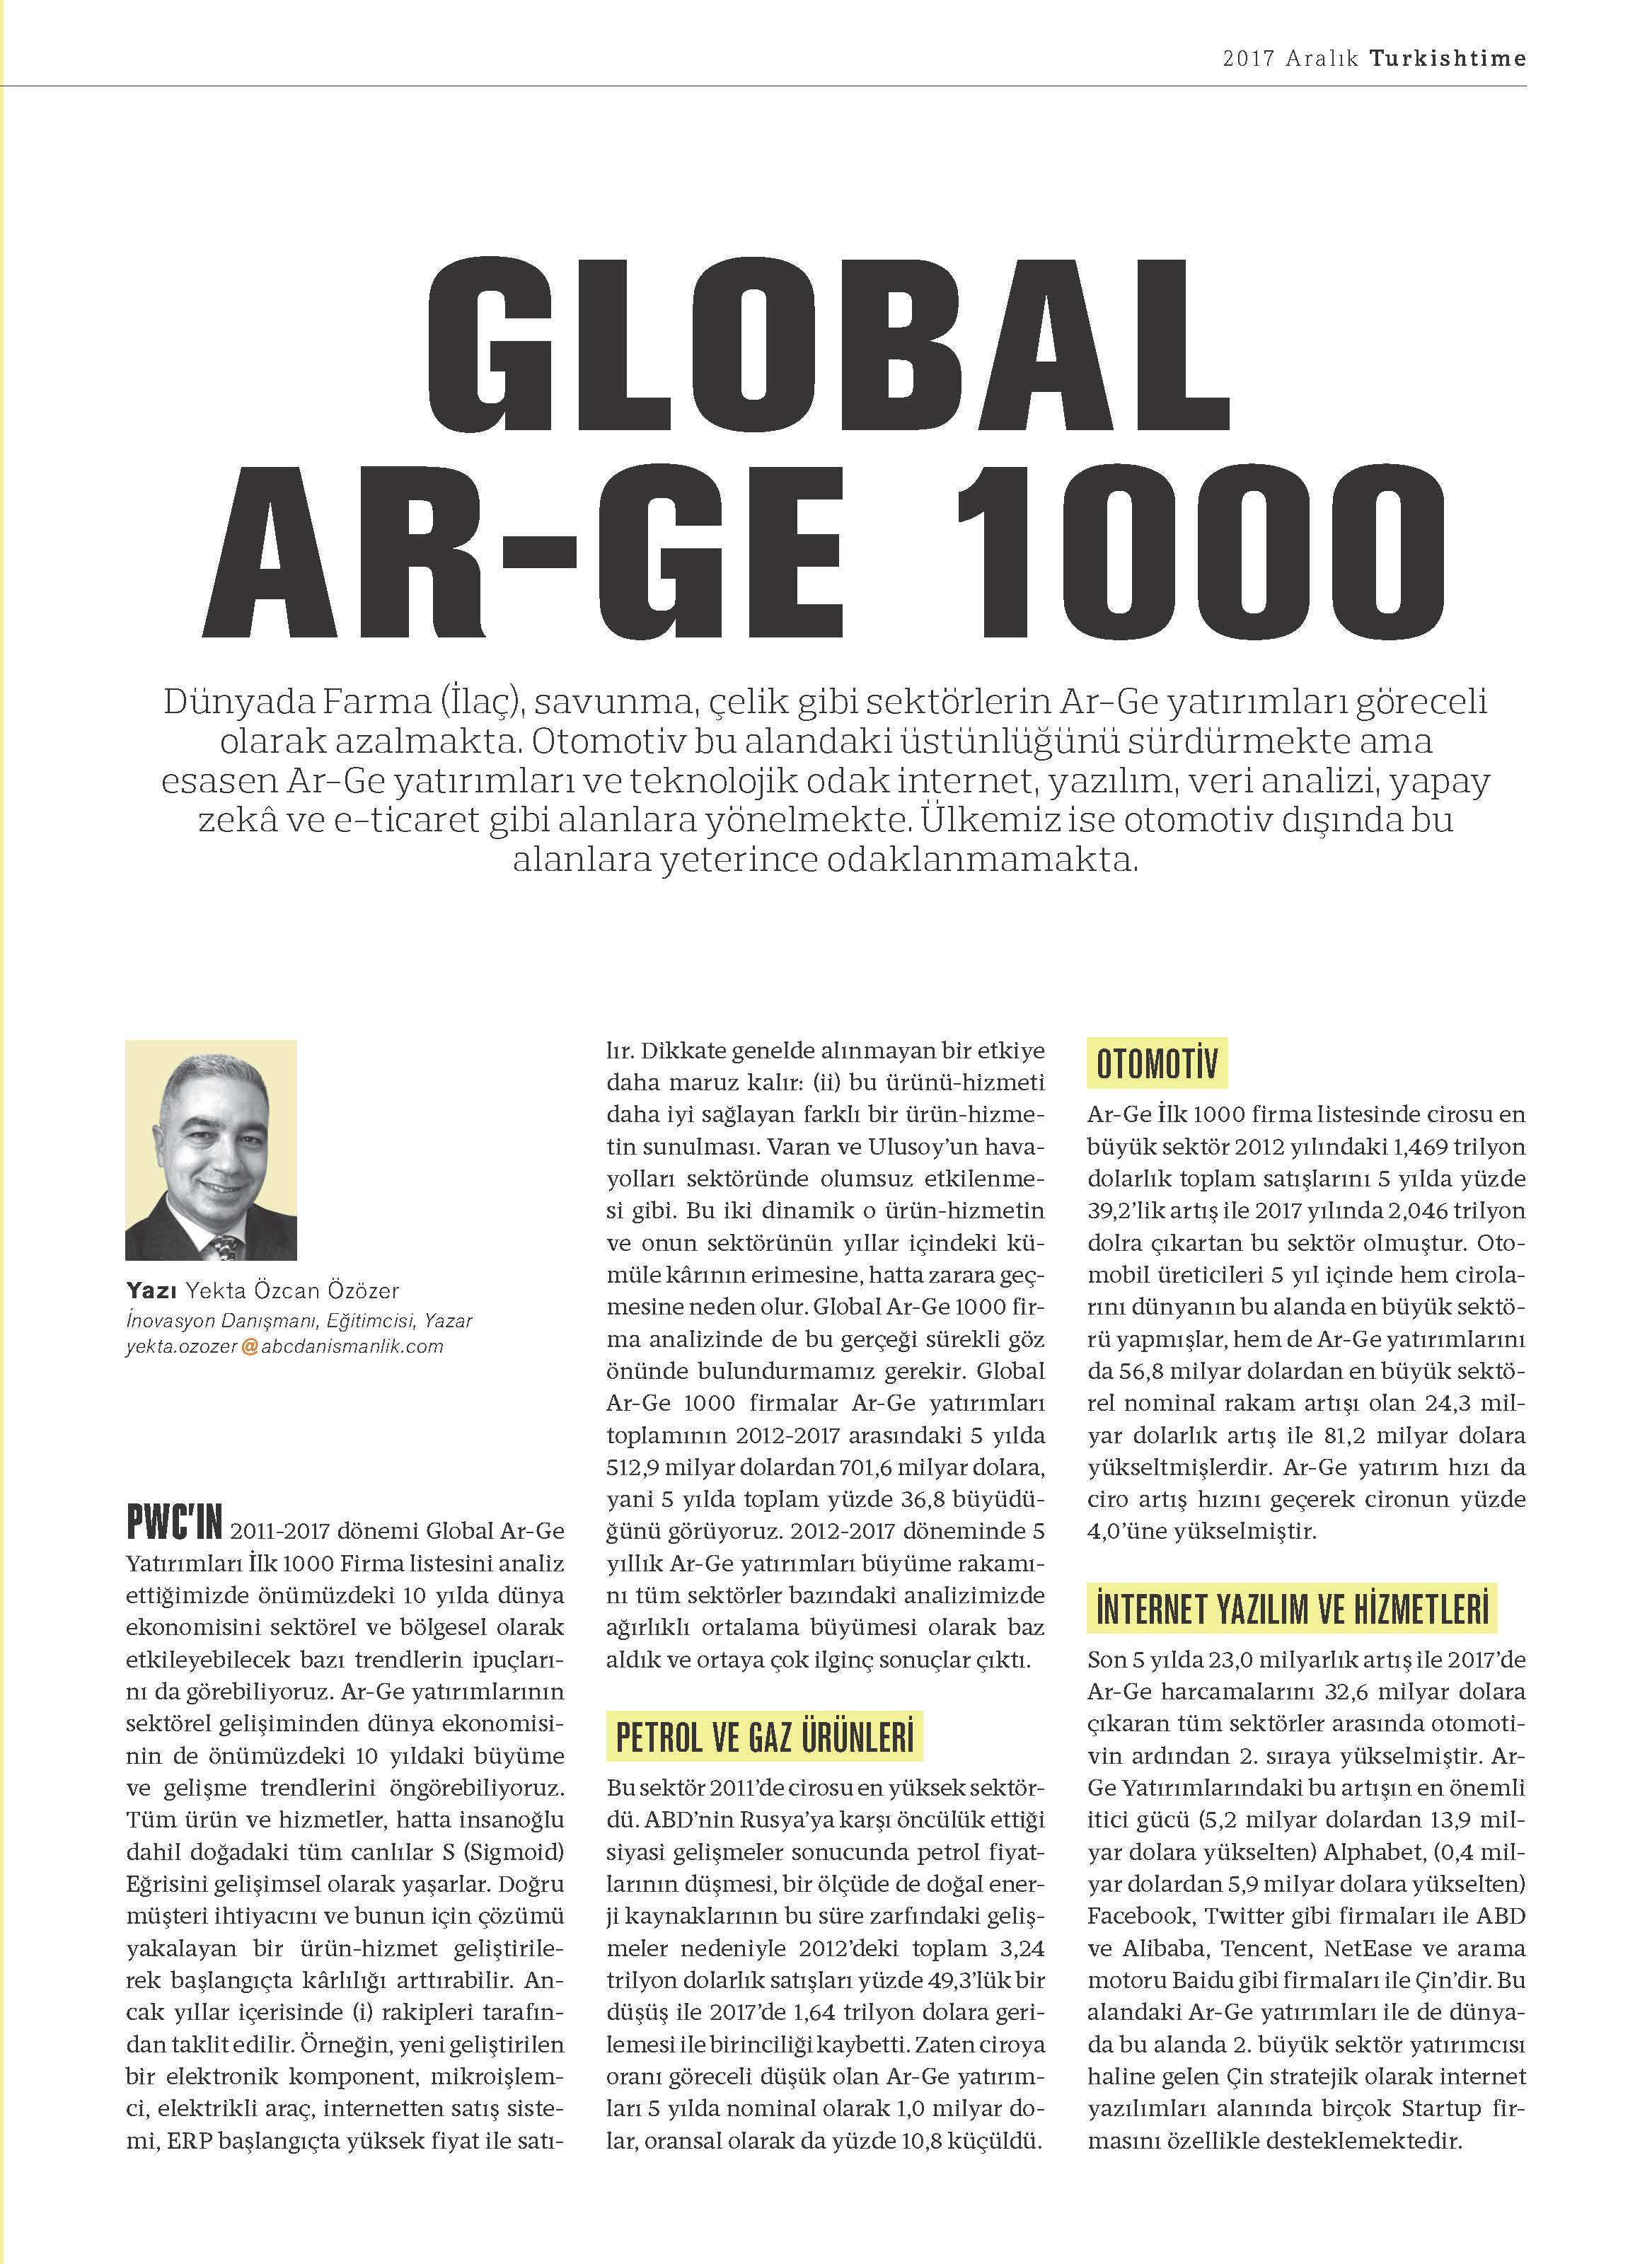 Turkishtime Ar-Ge Time - Global 1000 - Aralık 2017